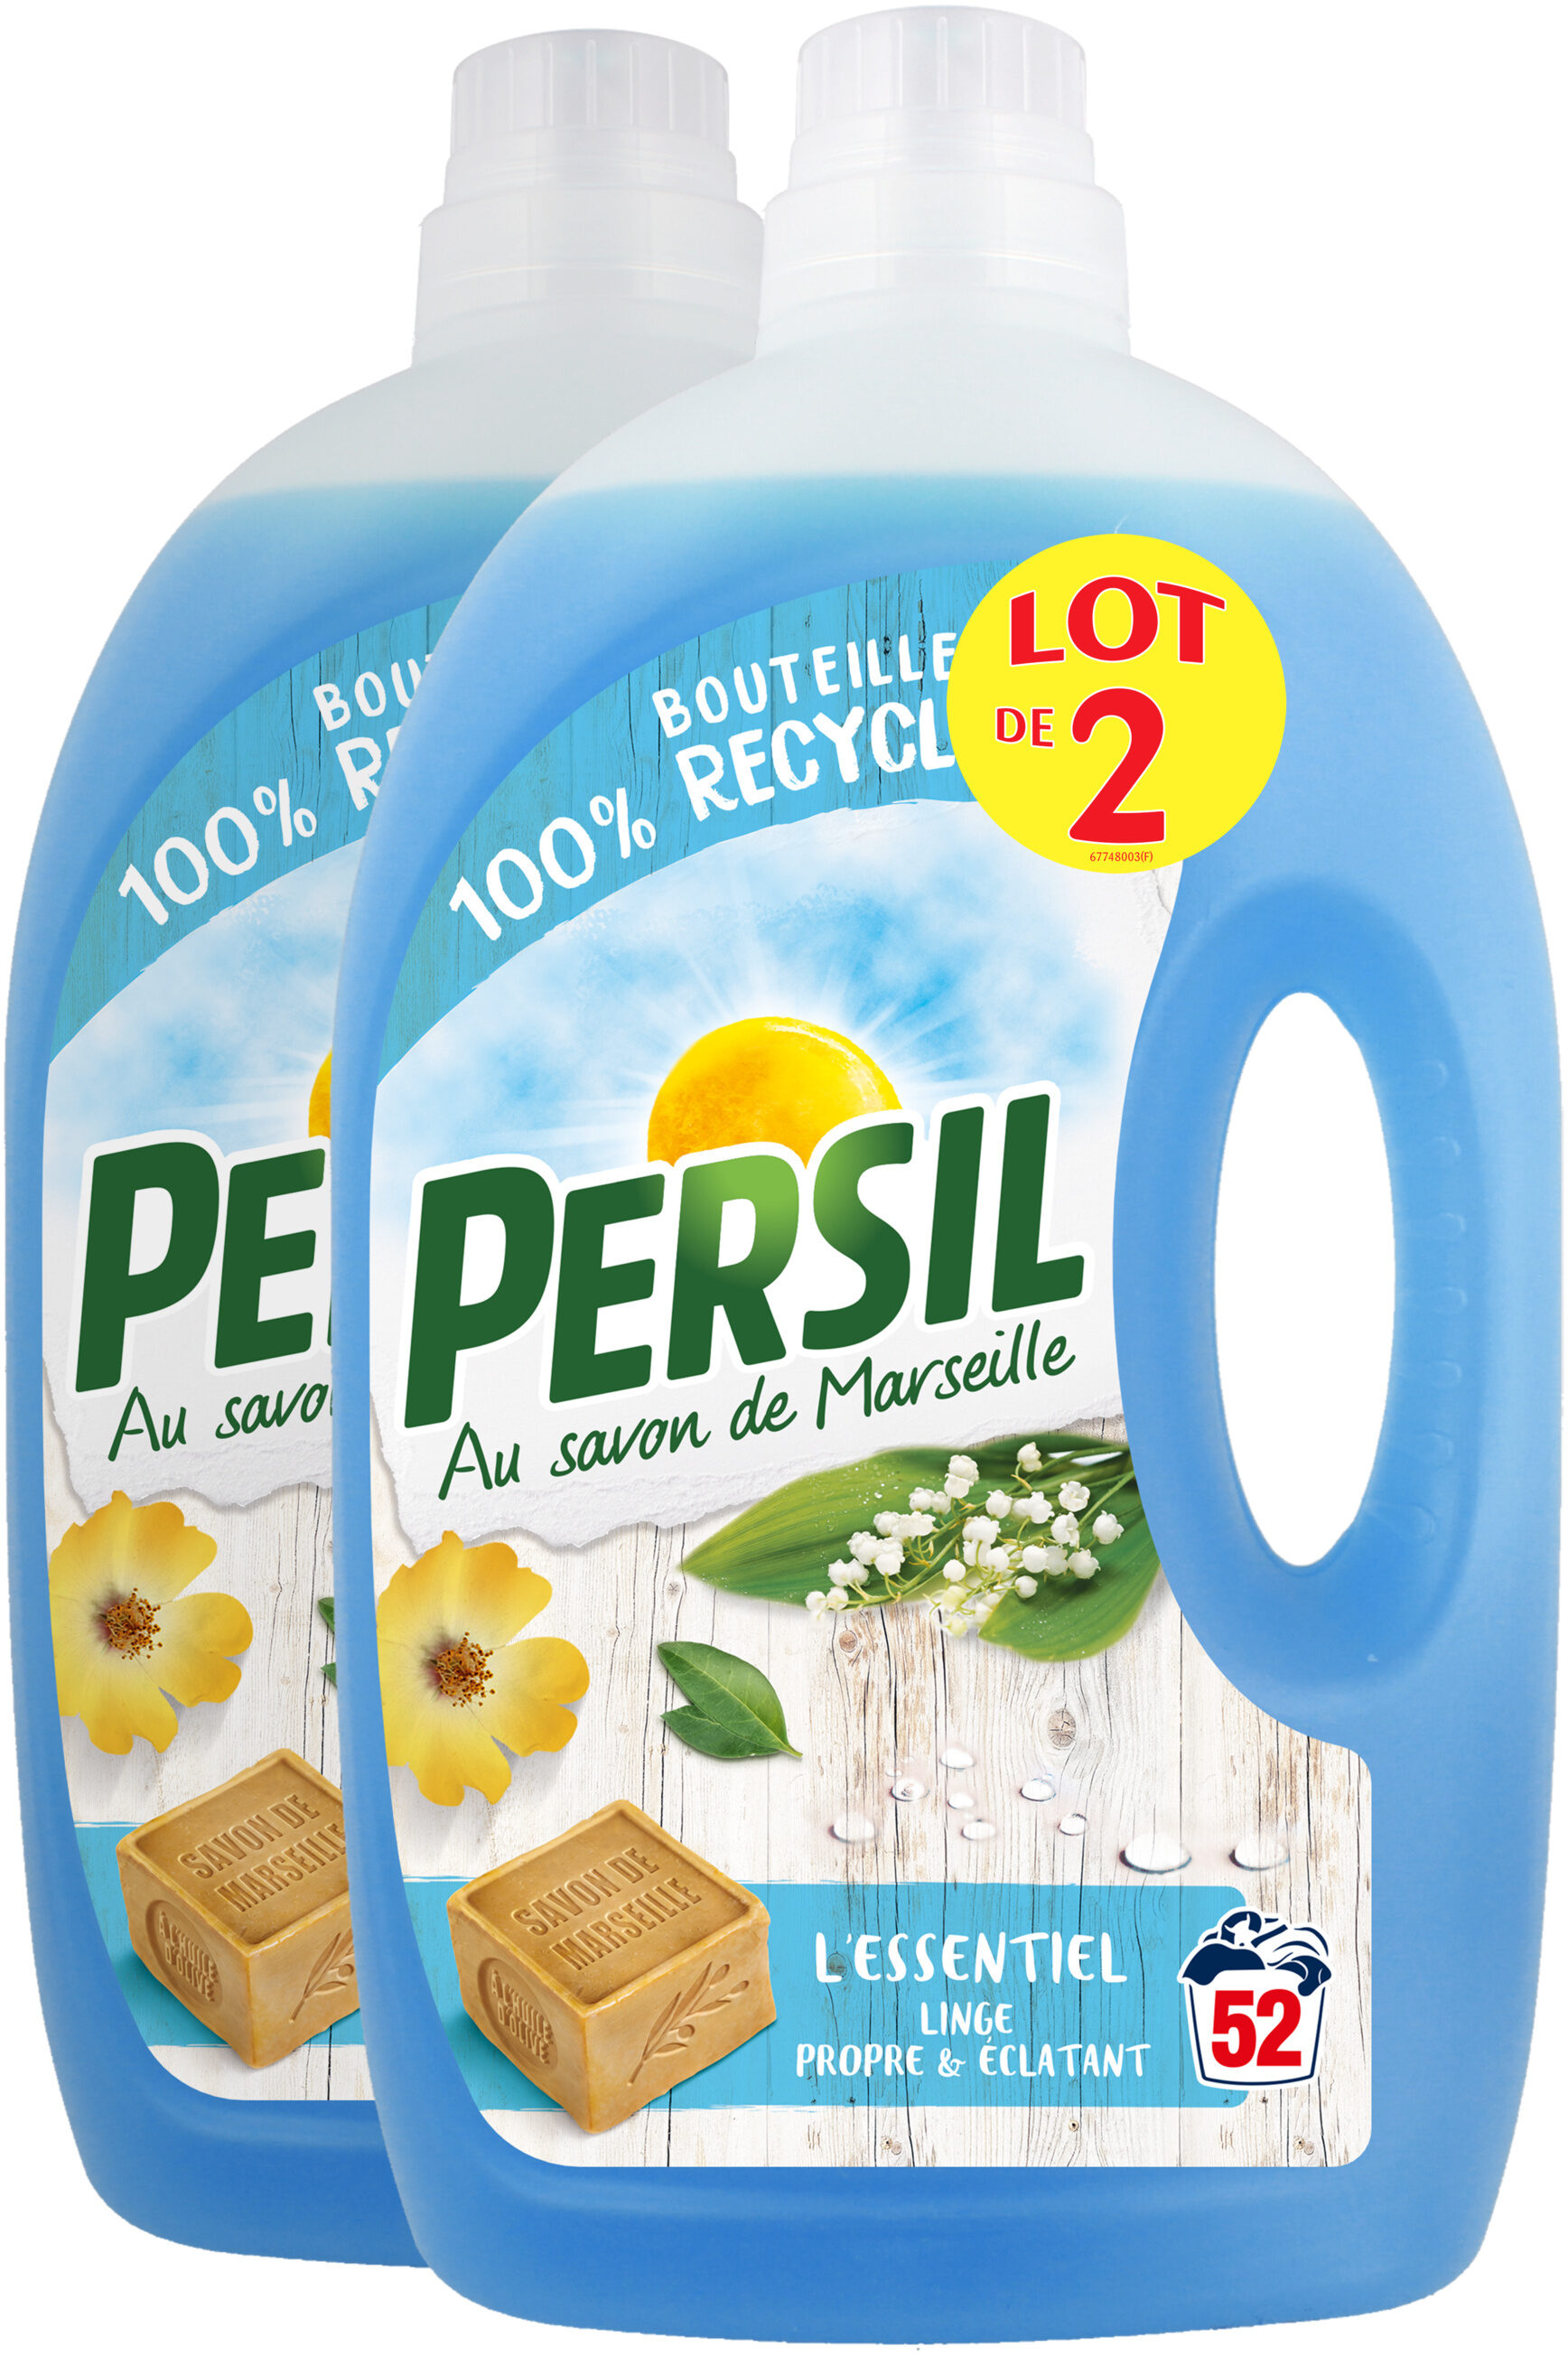 Persil Lessive Liquide l'Essentiel 2,6l 52 Lavages Lot de 2 - Produit - fr